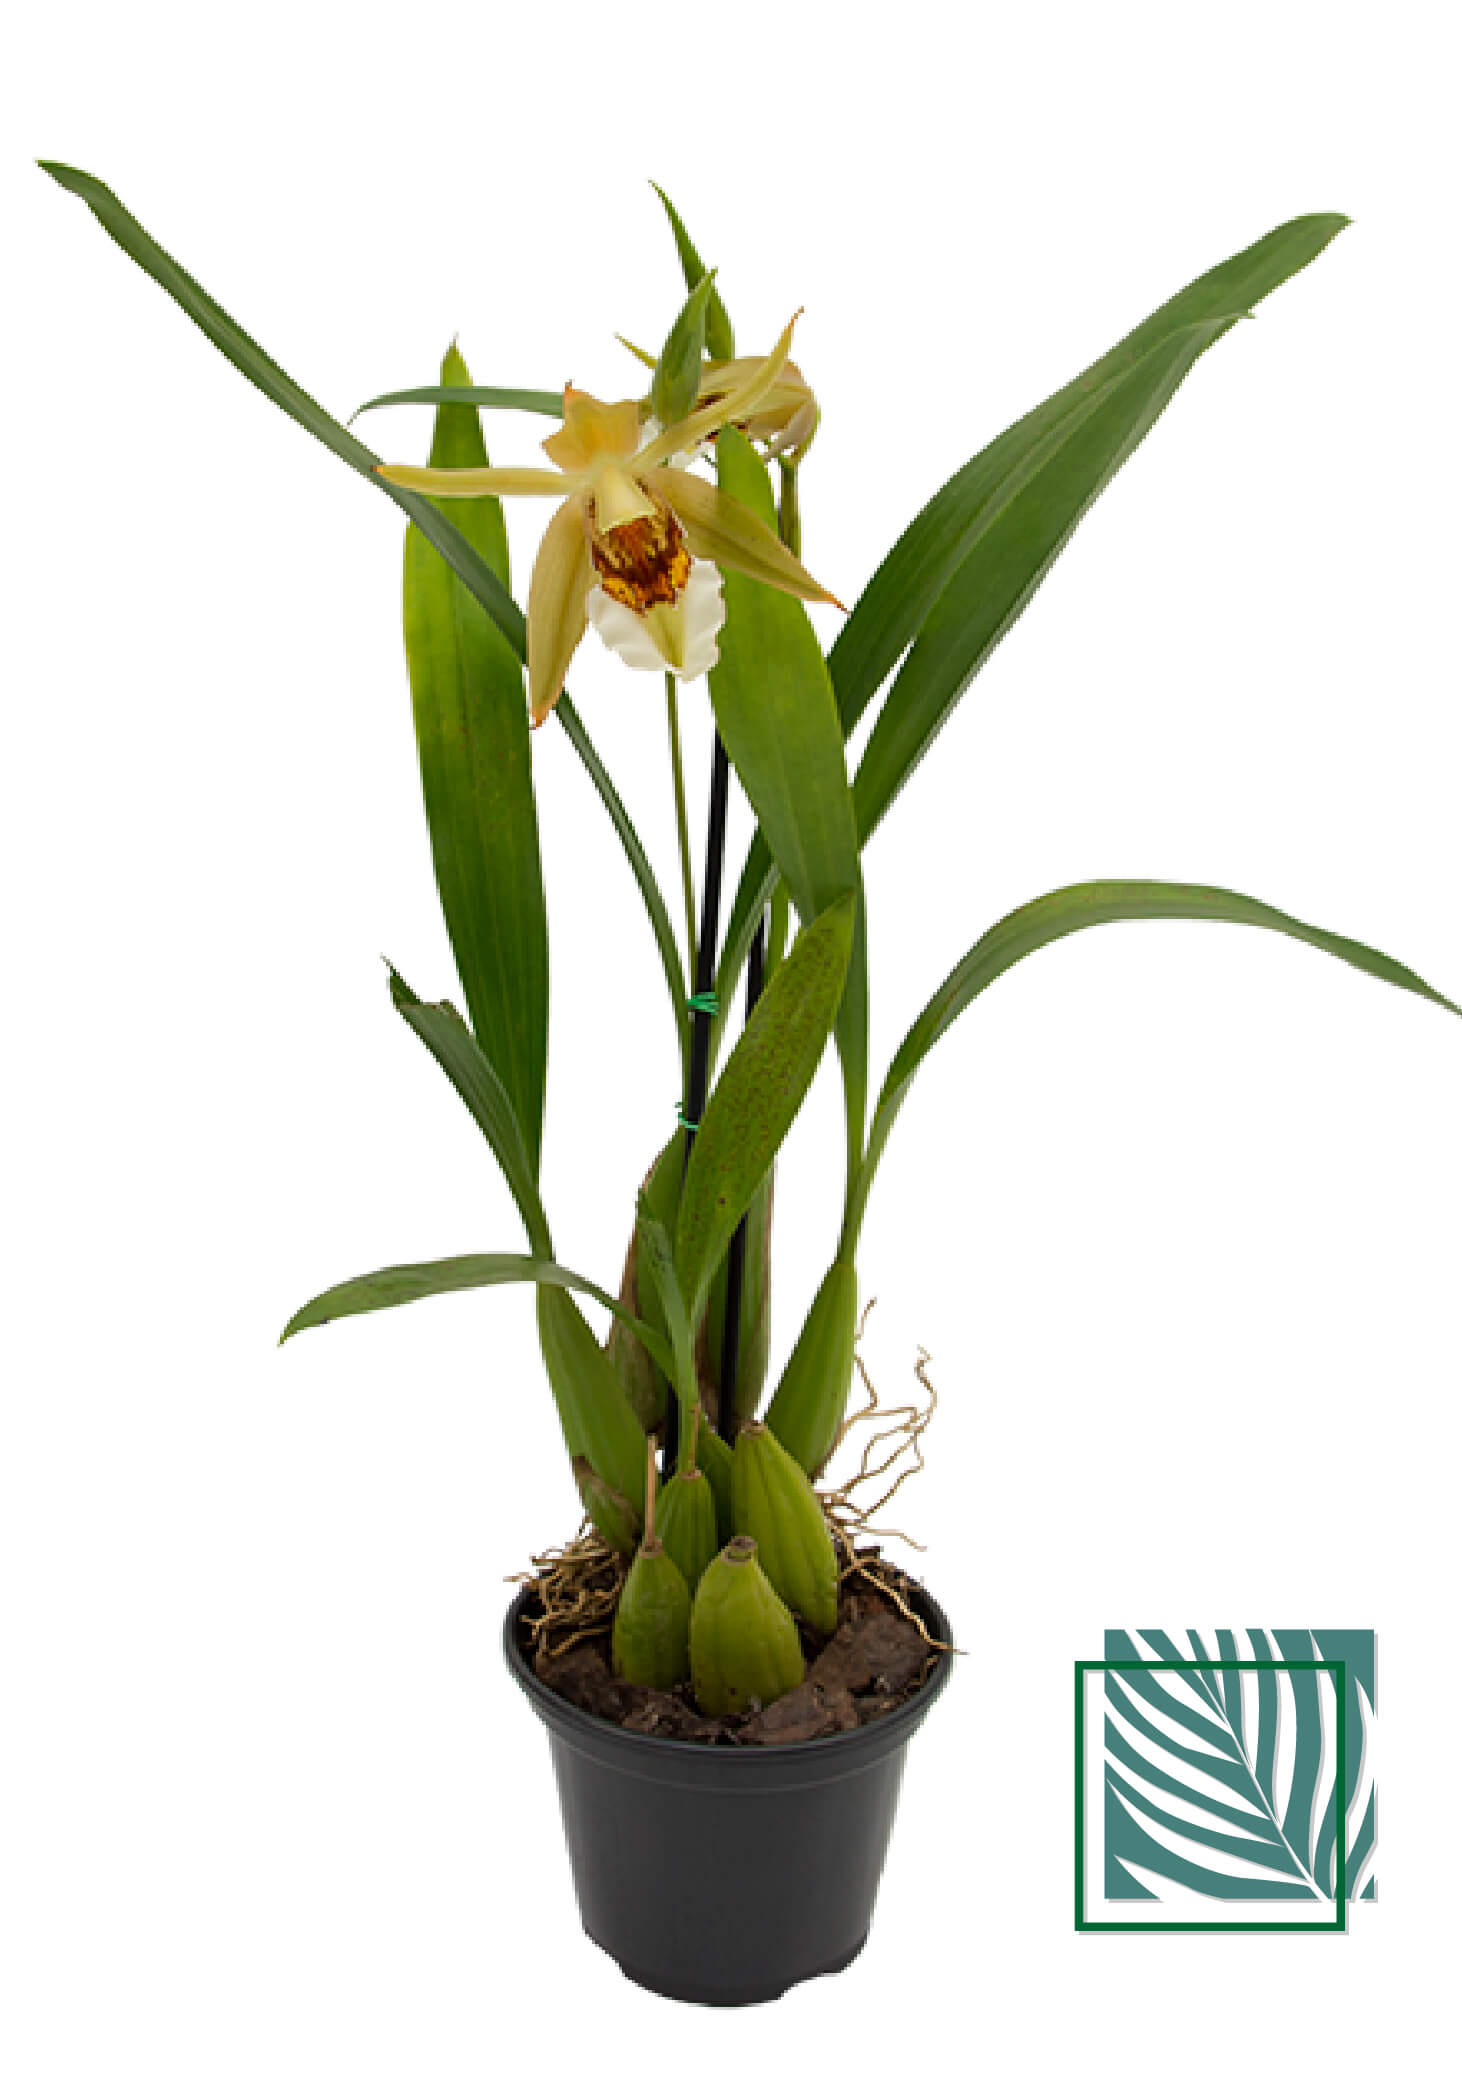 Orquidea Cattleya - Natureza Urbana: Sofisticação Sustentável